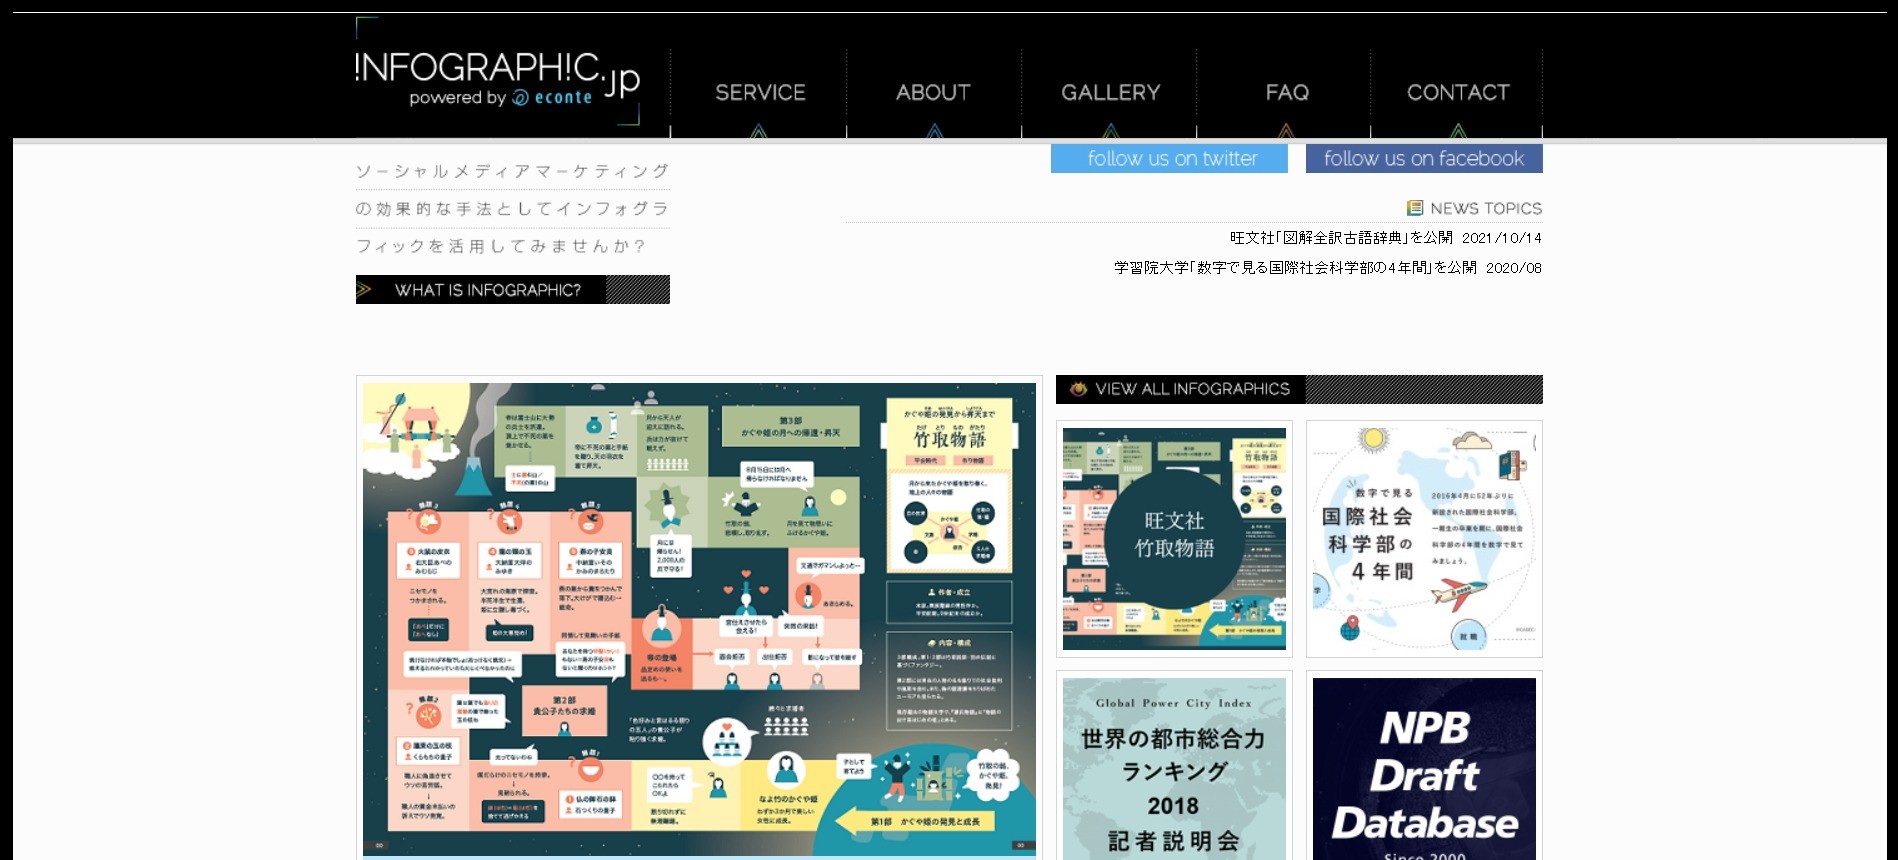 インフォグラフィックの例をまとめたサイト　INFOGRAPHIC.JP